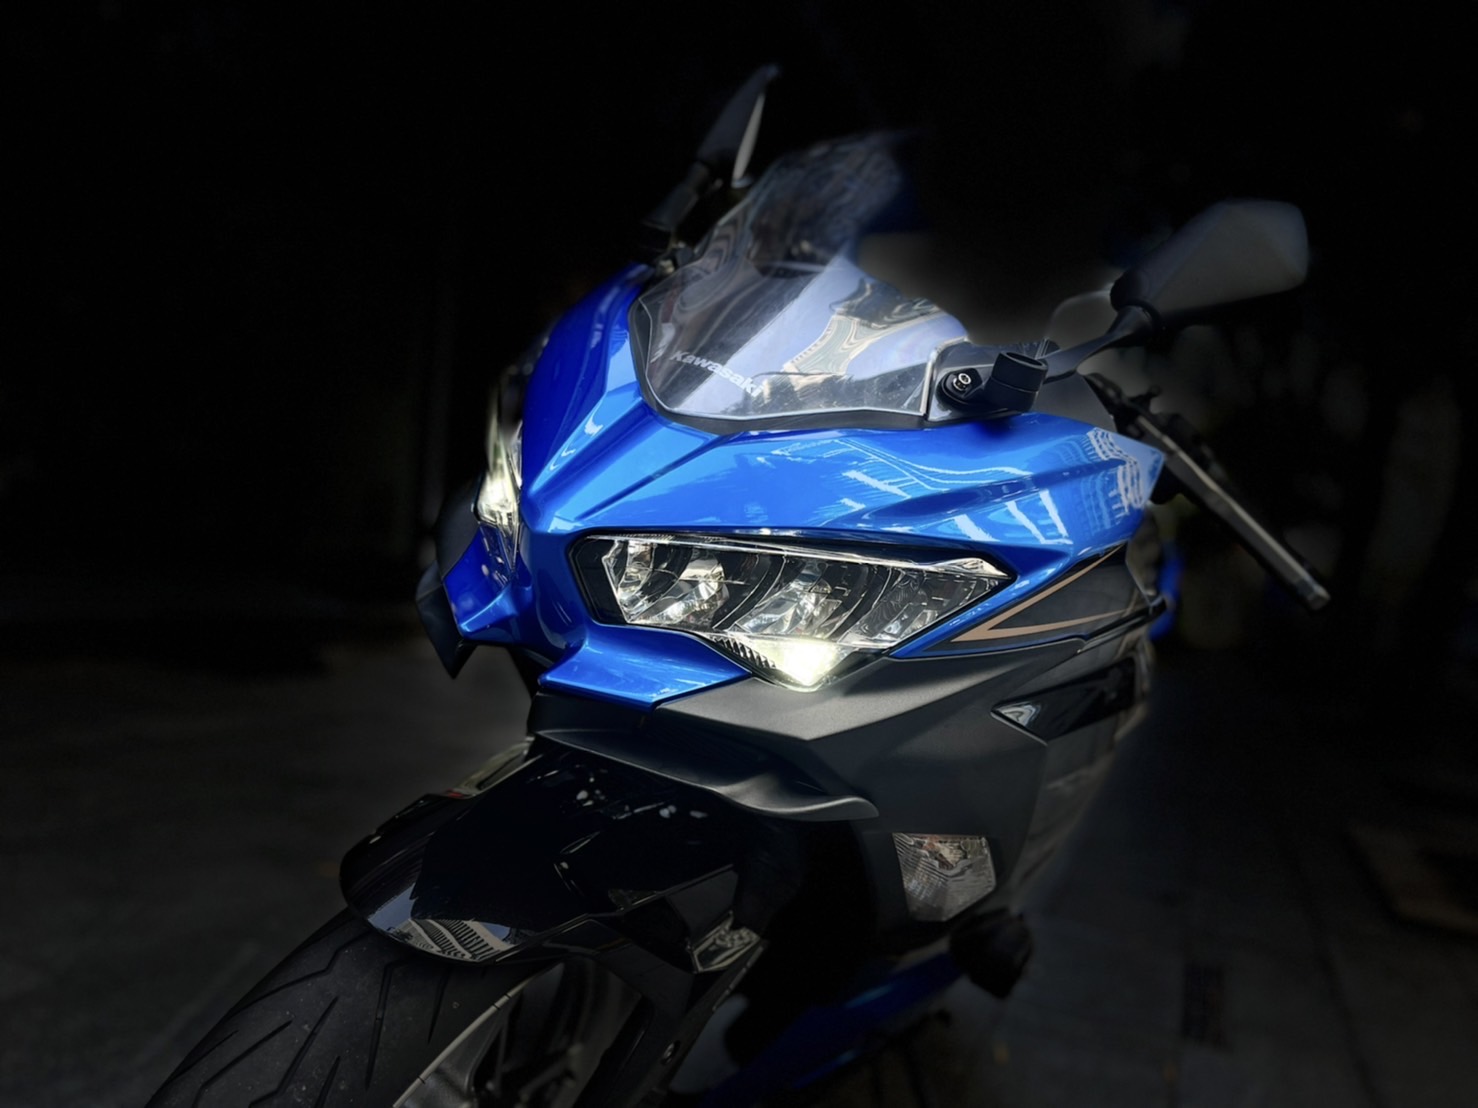 【小資族二手重機買賣】KAWASAKI NINJA400 - 「Webike-摩托車市」 忍400 藍色系 全直通 小資族二手重機買賣